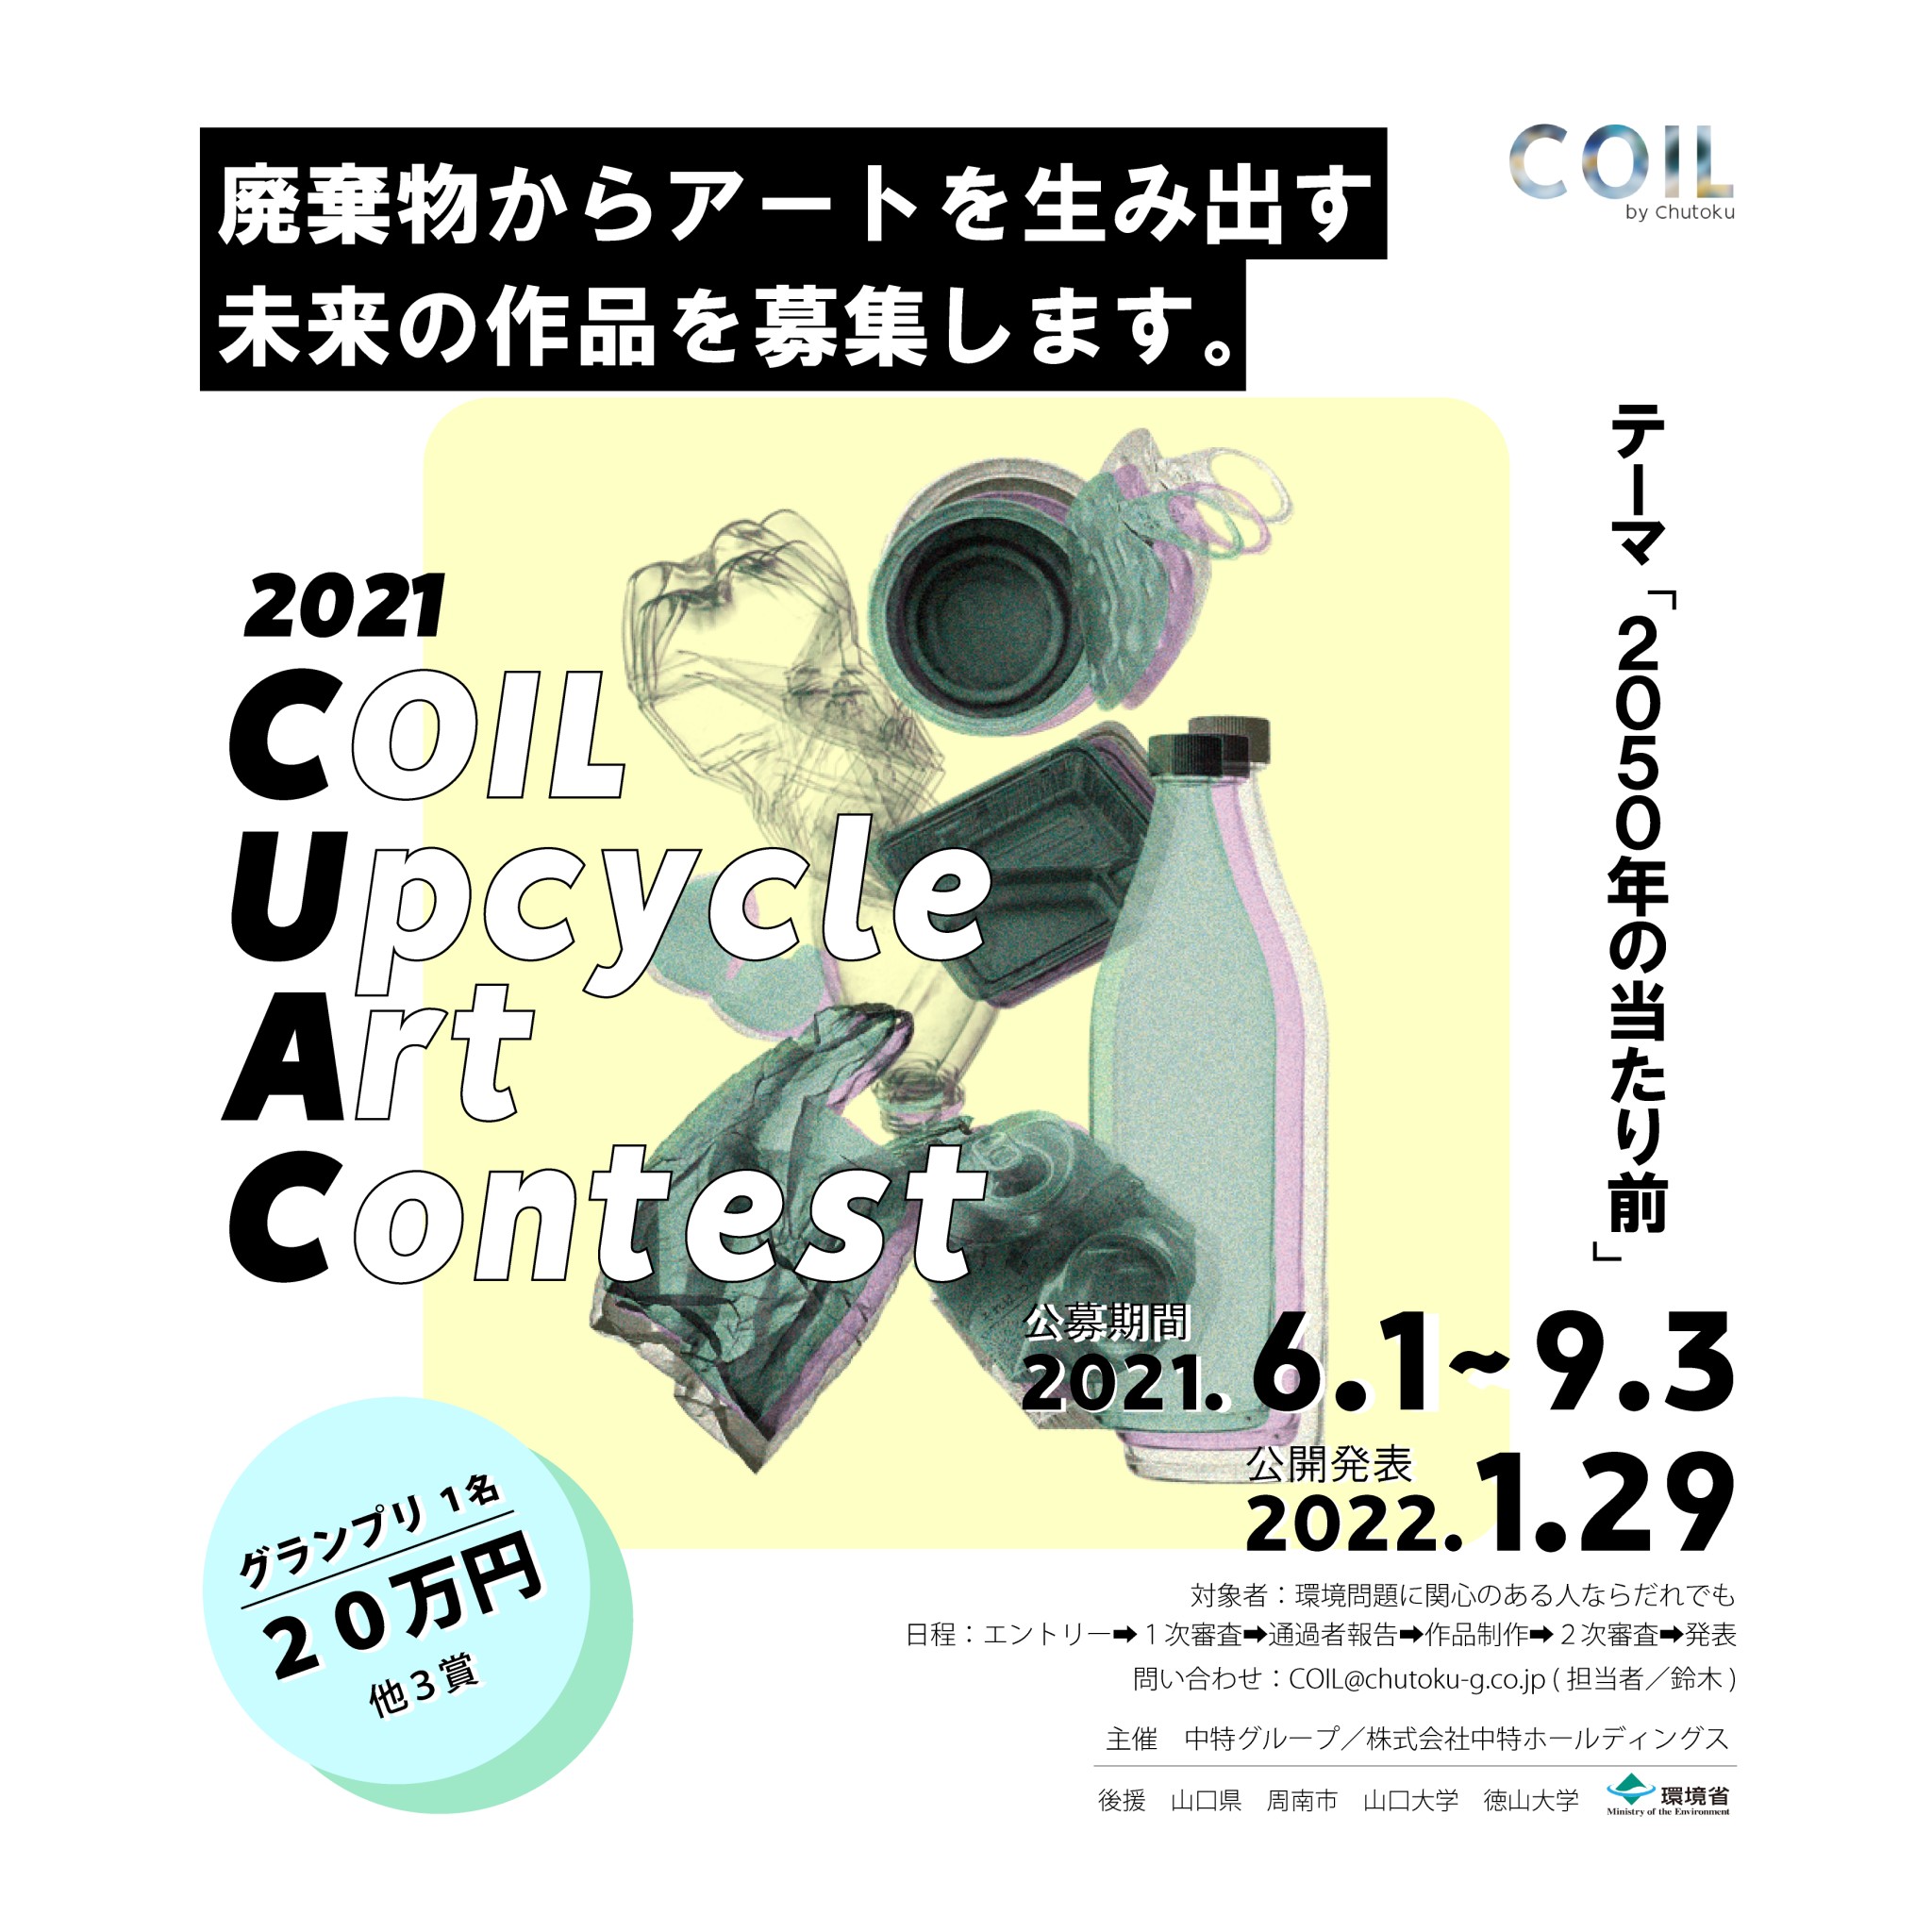 廃棄物からアート作品を生み出す未来のコンテスト「COIL Upcycle Art Contest 2021」。120名を超える全国のアーティストから応募がありました。のサブ画像1